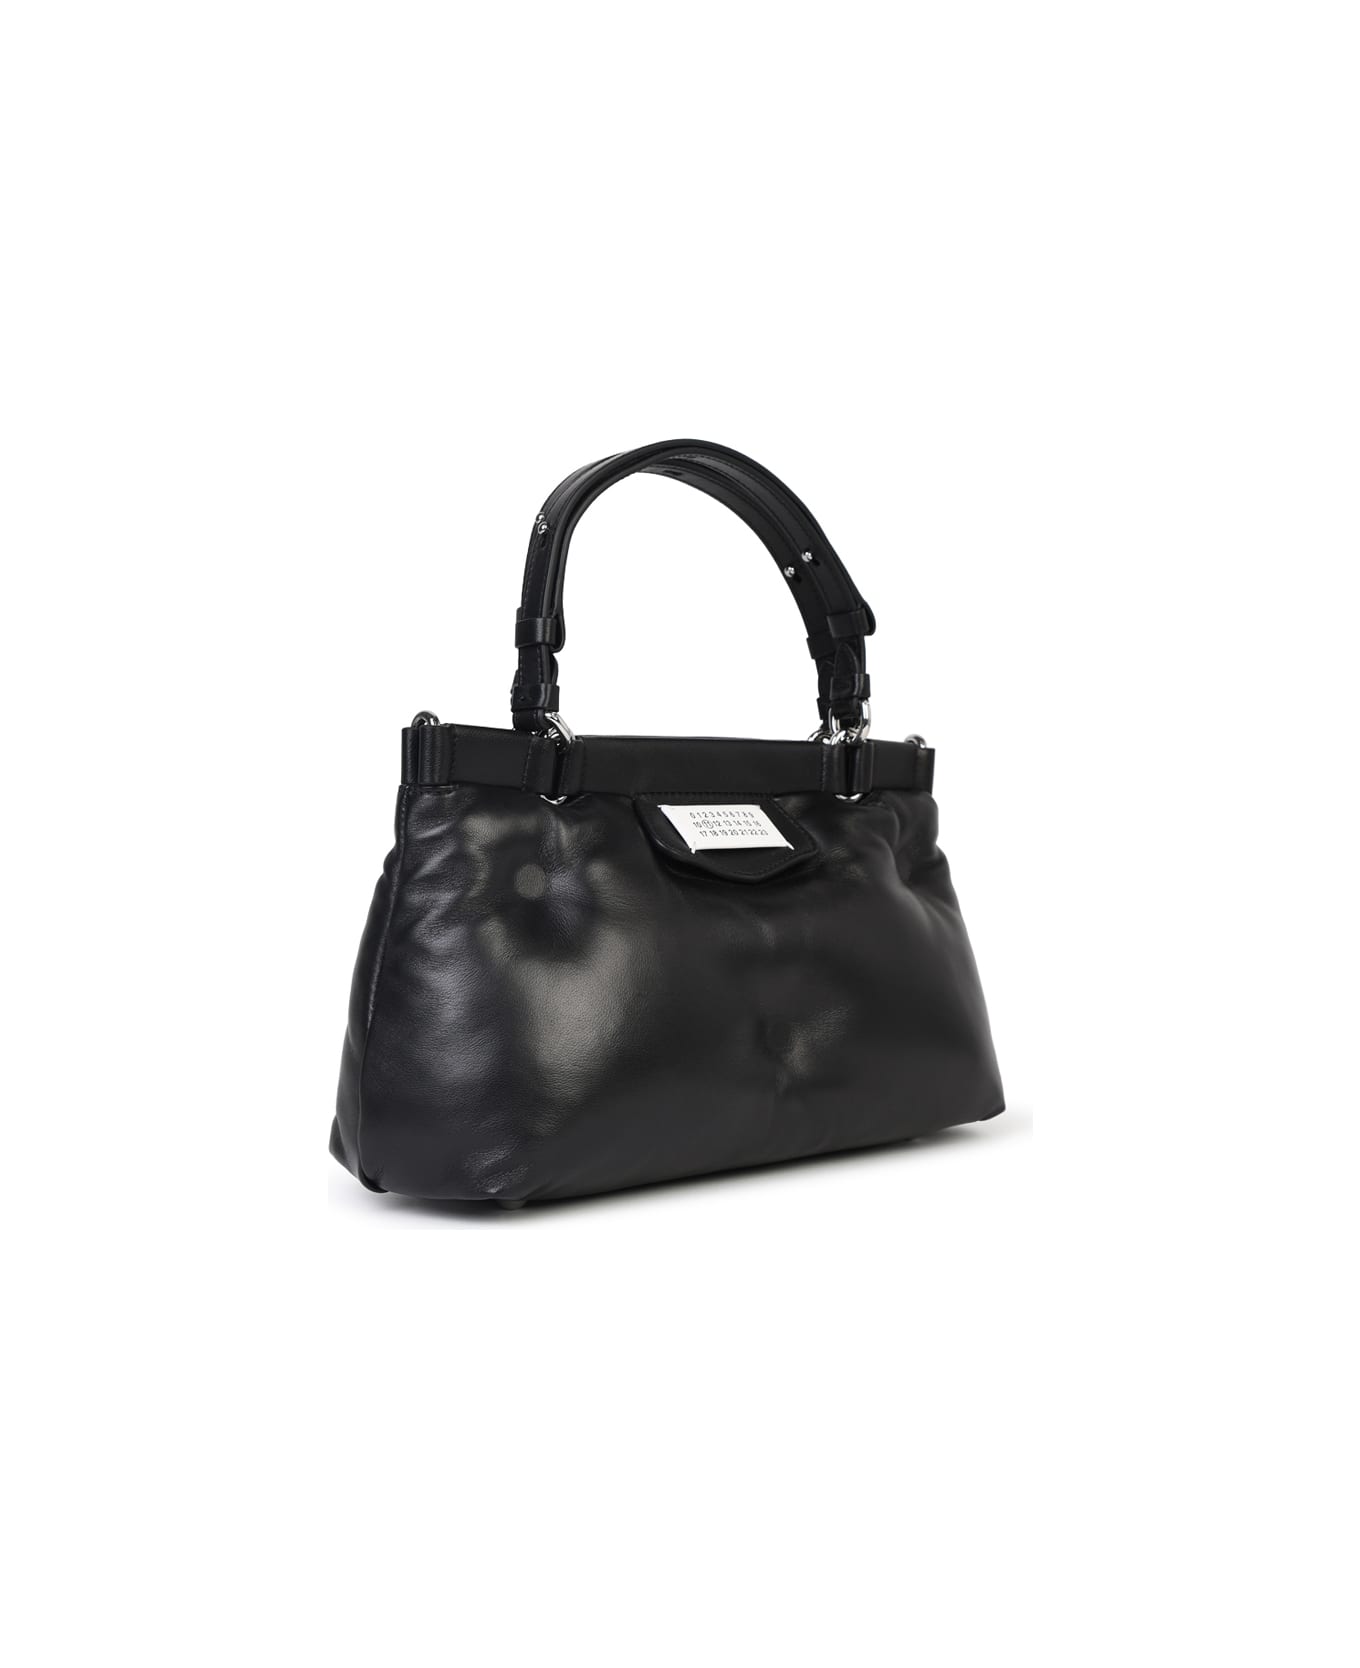 Maison Margiela 'glam Slam' Black Leather Bag - Black